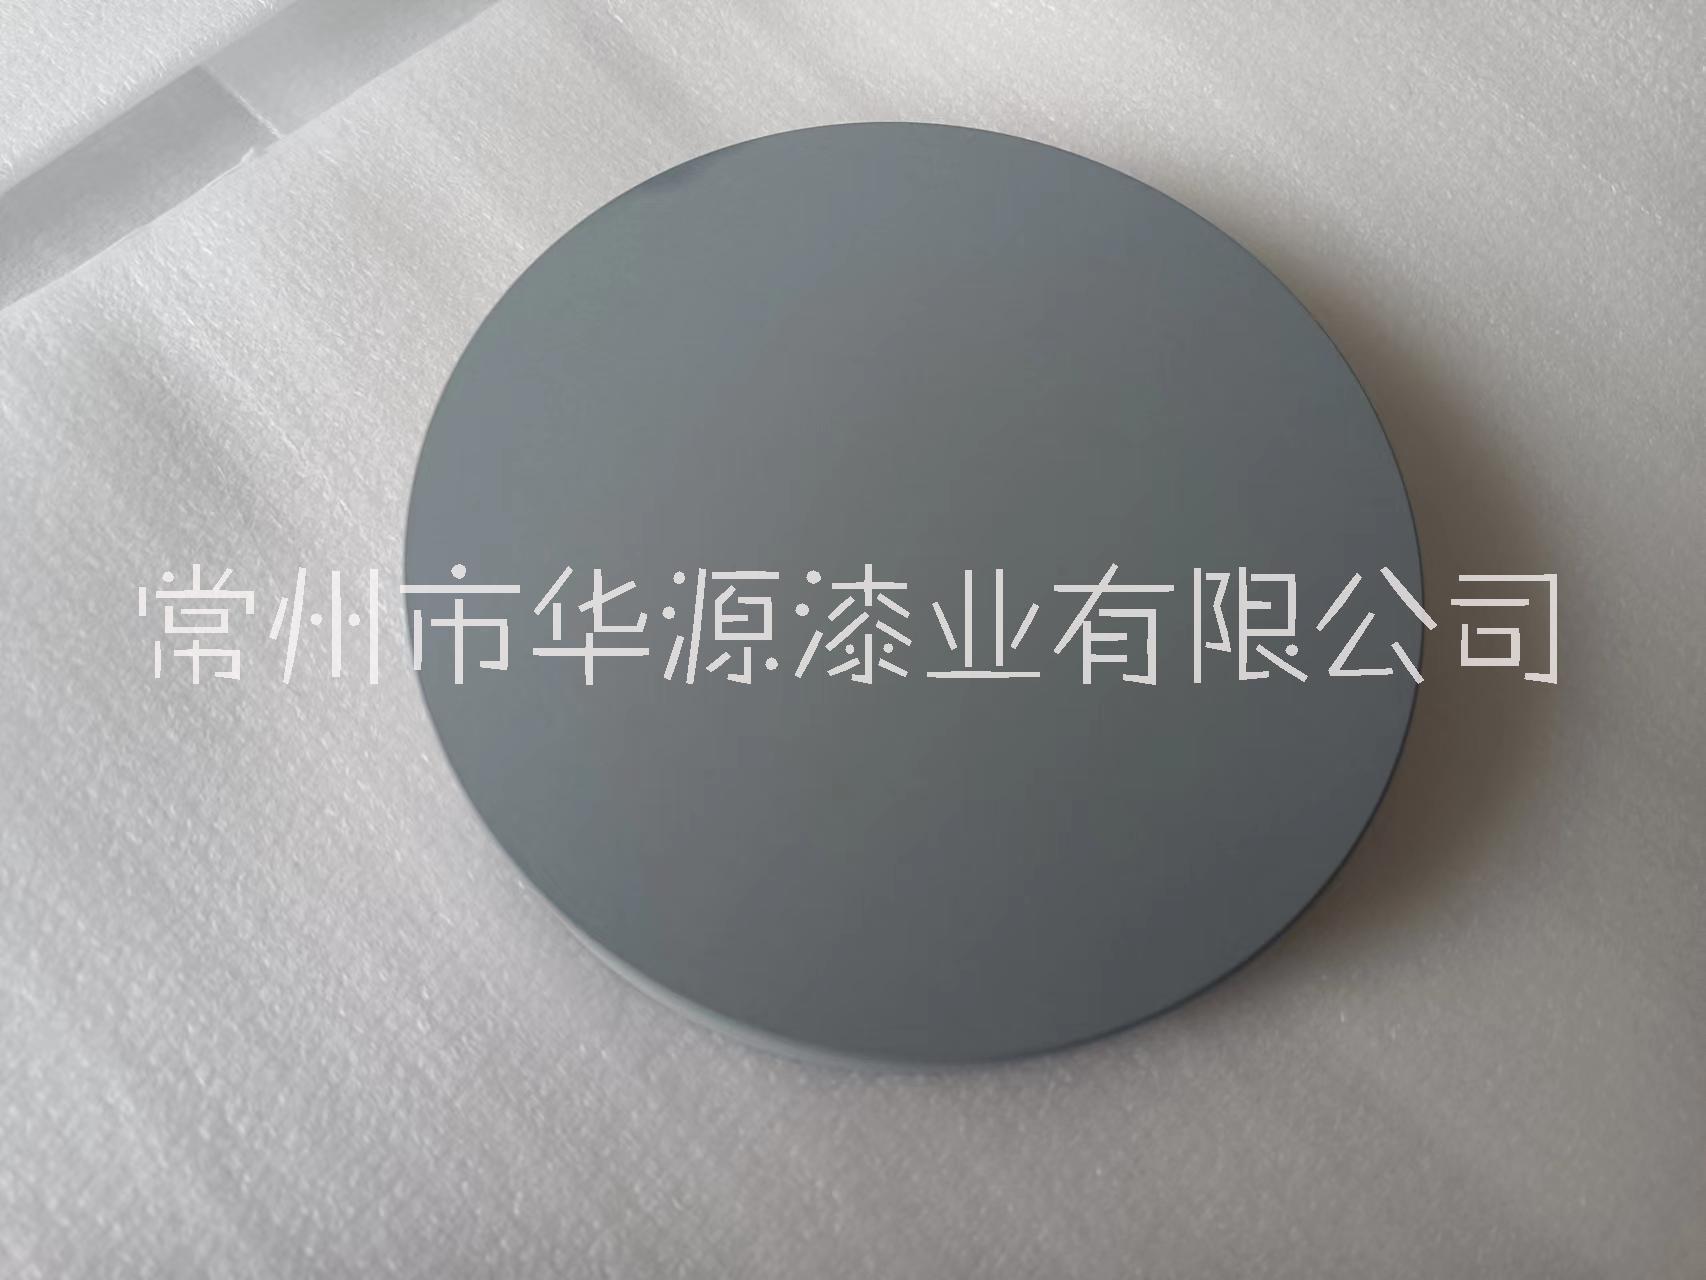 上海汽车铝合金加工、地址、电话【常州市华源漆业有限公司】图片